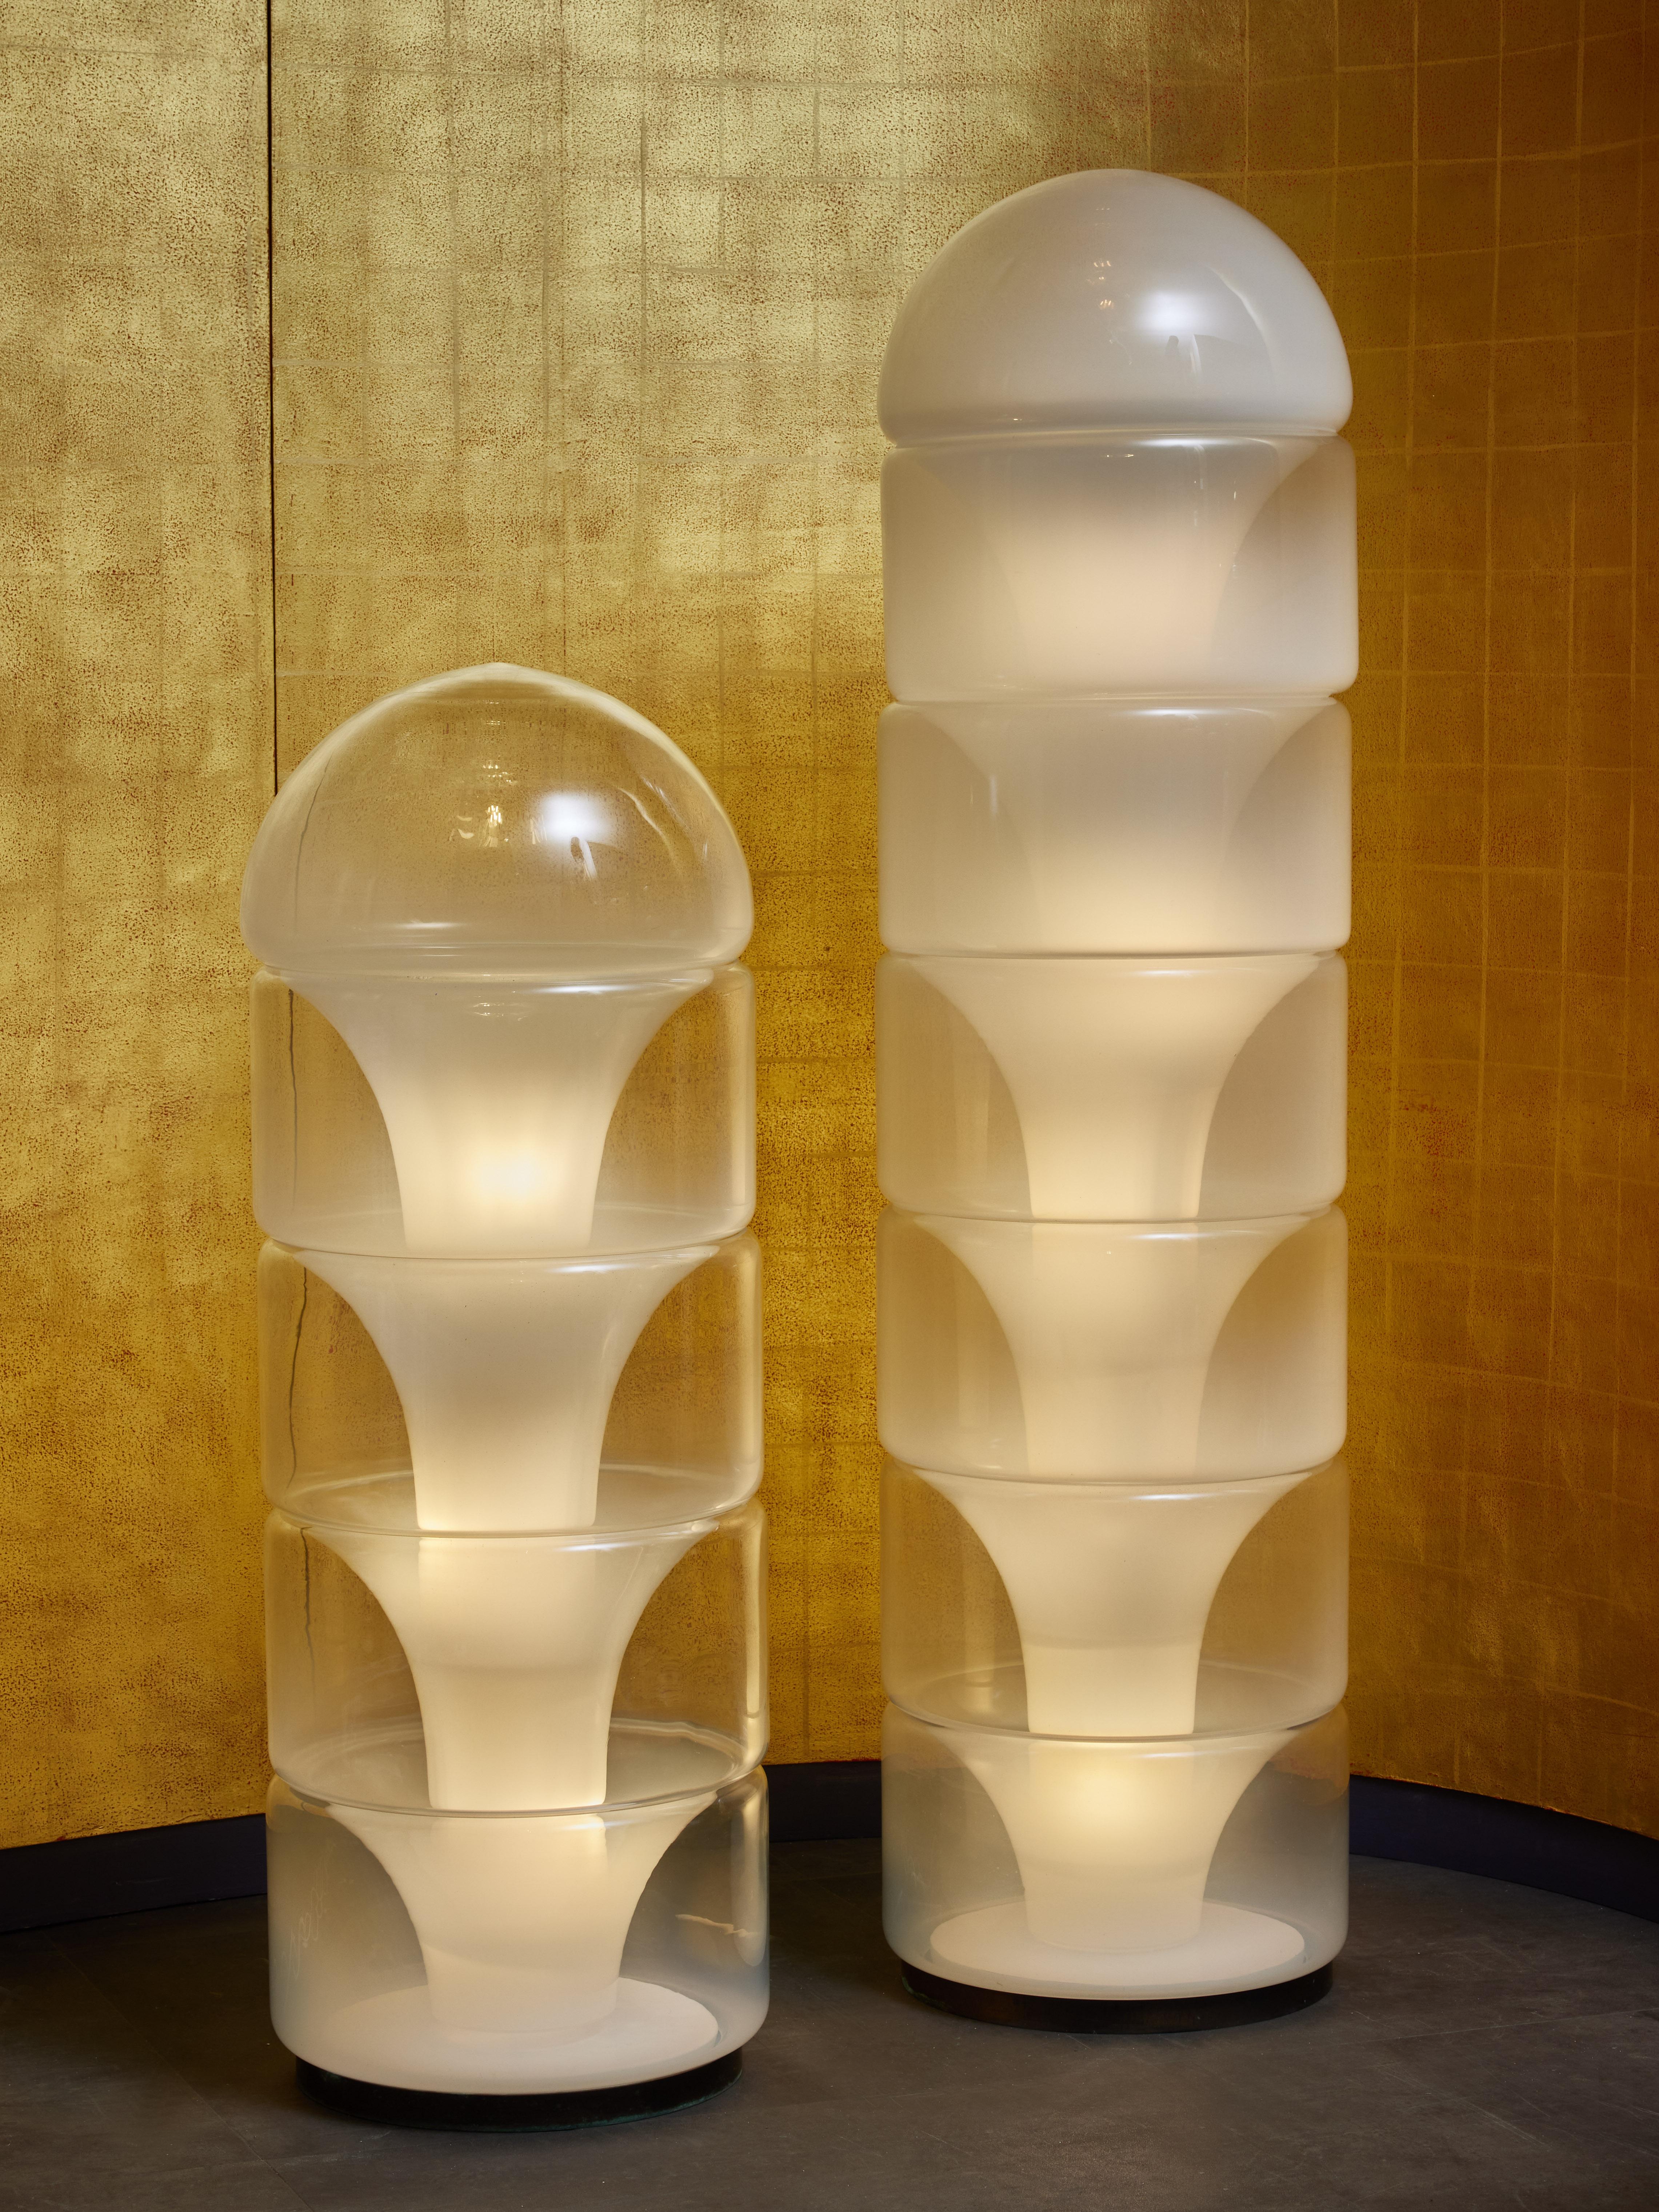 Stehleuchte Sfumato aus Glas, entworfen von Carlo Nason für Mazzega.

Dieses Stück (links abgebildet) besteht aus einer inneren Metallstruktur, auf der fünf Murano-Glaselemente gestapelt sind, die das Licht verbreiten.